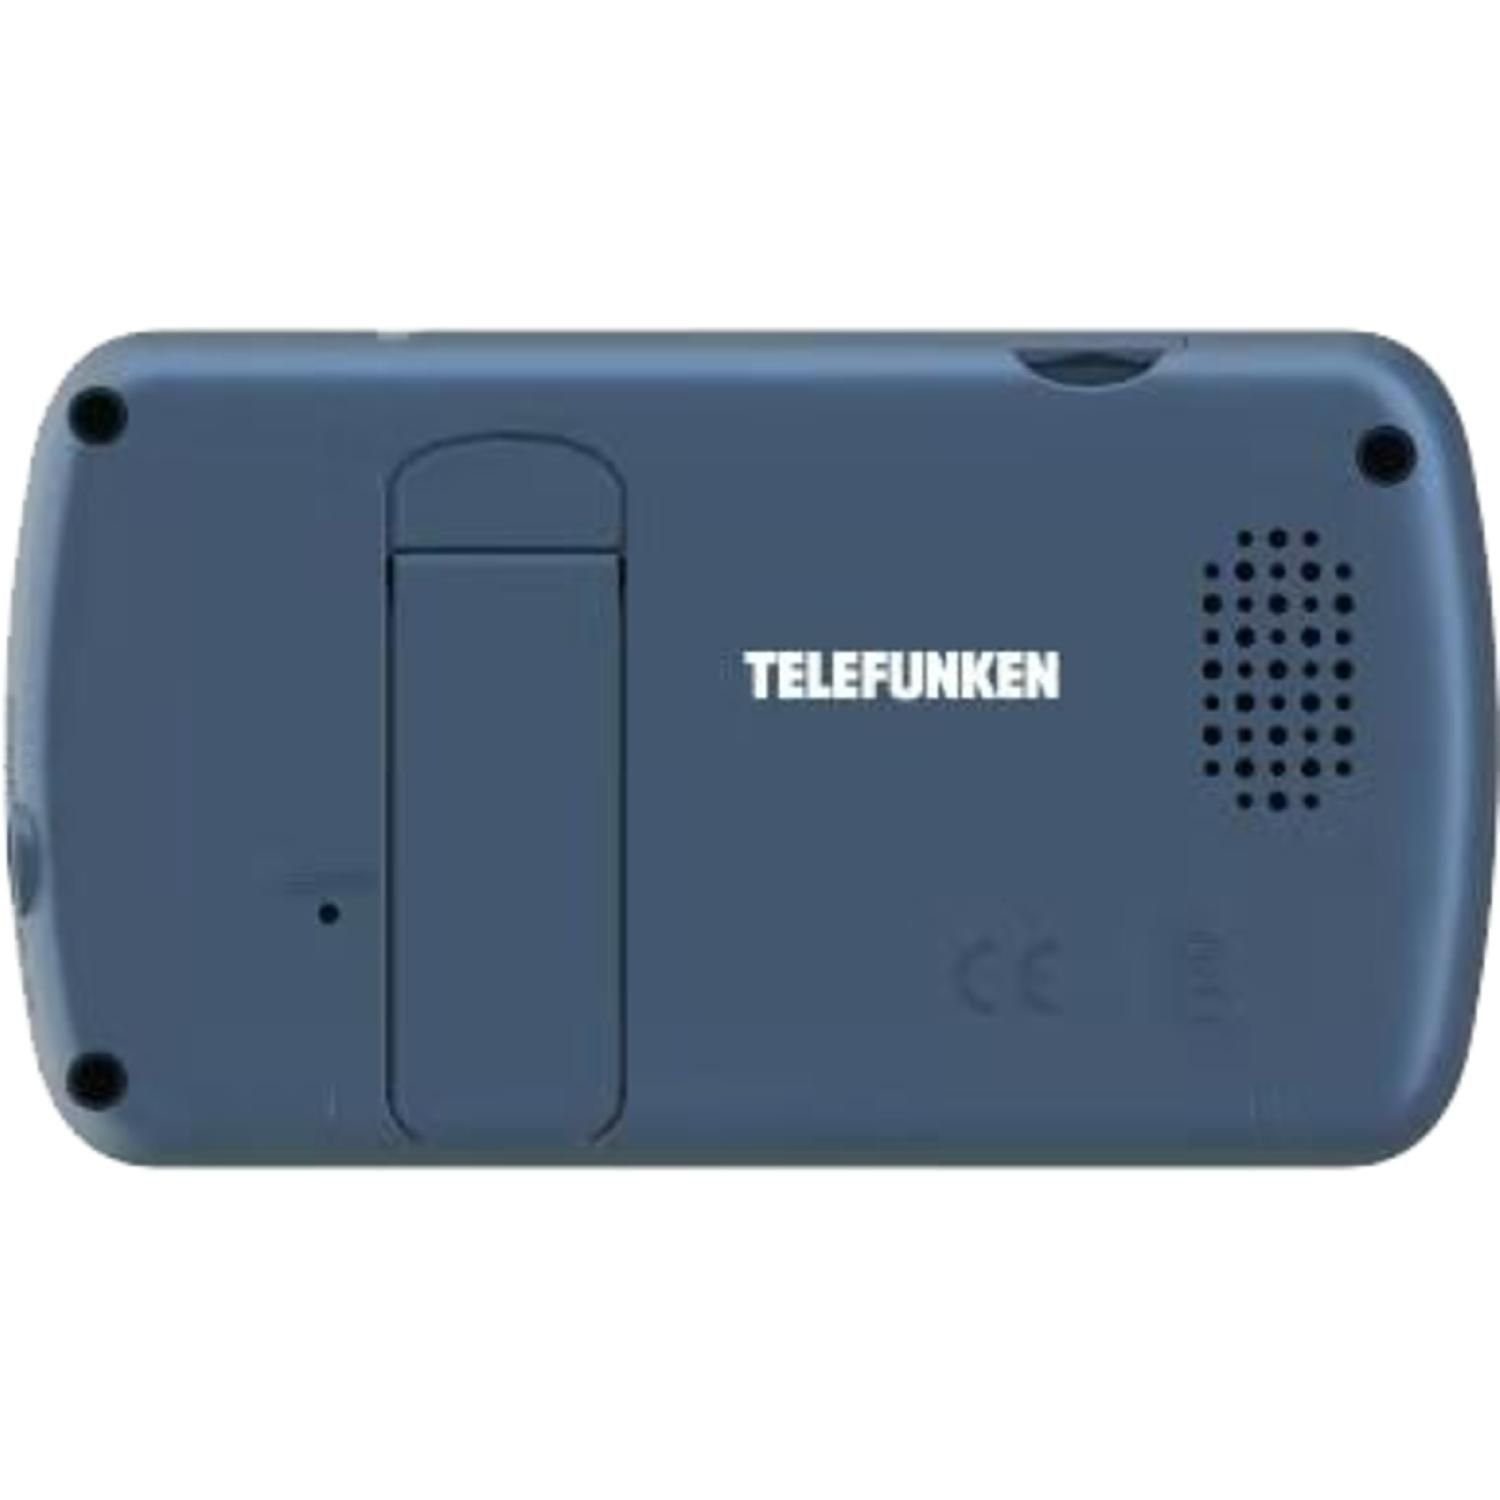 VM-F200 Px, Telefunken Starre Infrarotmodus Video-Babyphone 320x240 Video-Babyphone 2,4'' Kamera Display